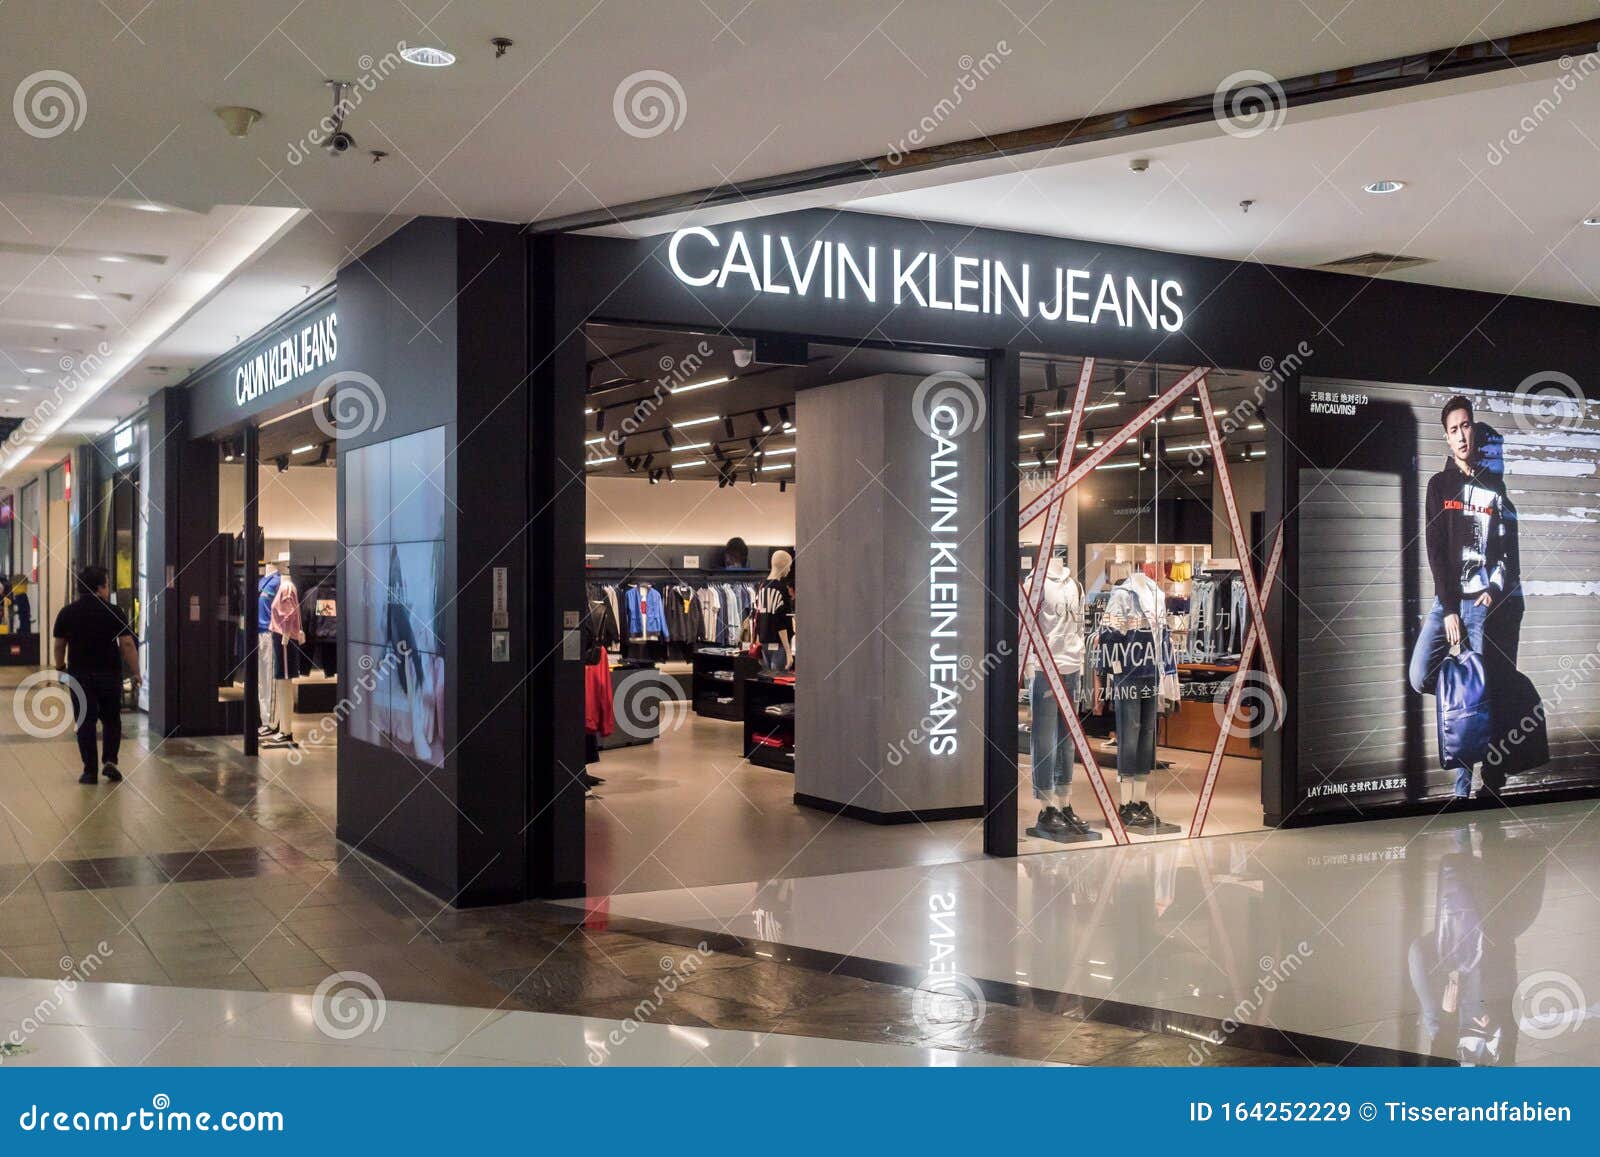 Calvin Klein (fashion house) - Wikipedia